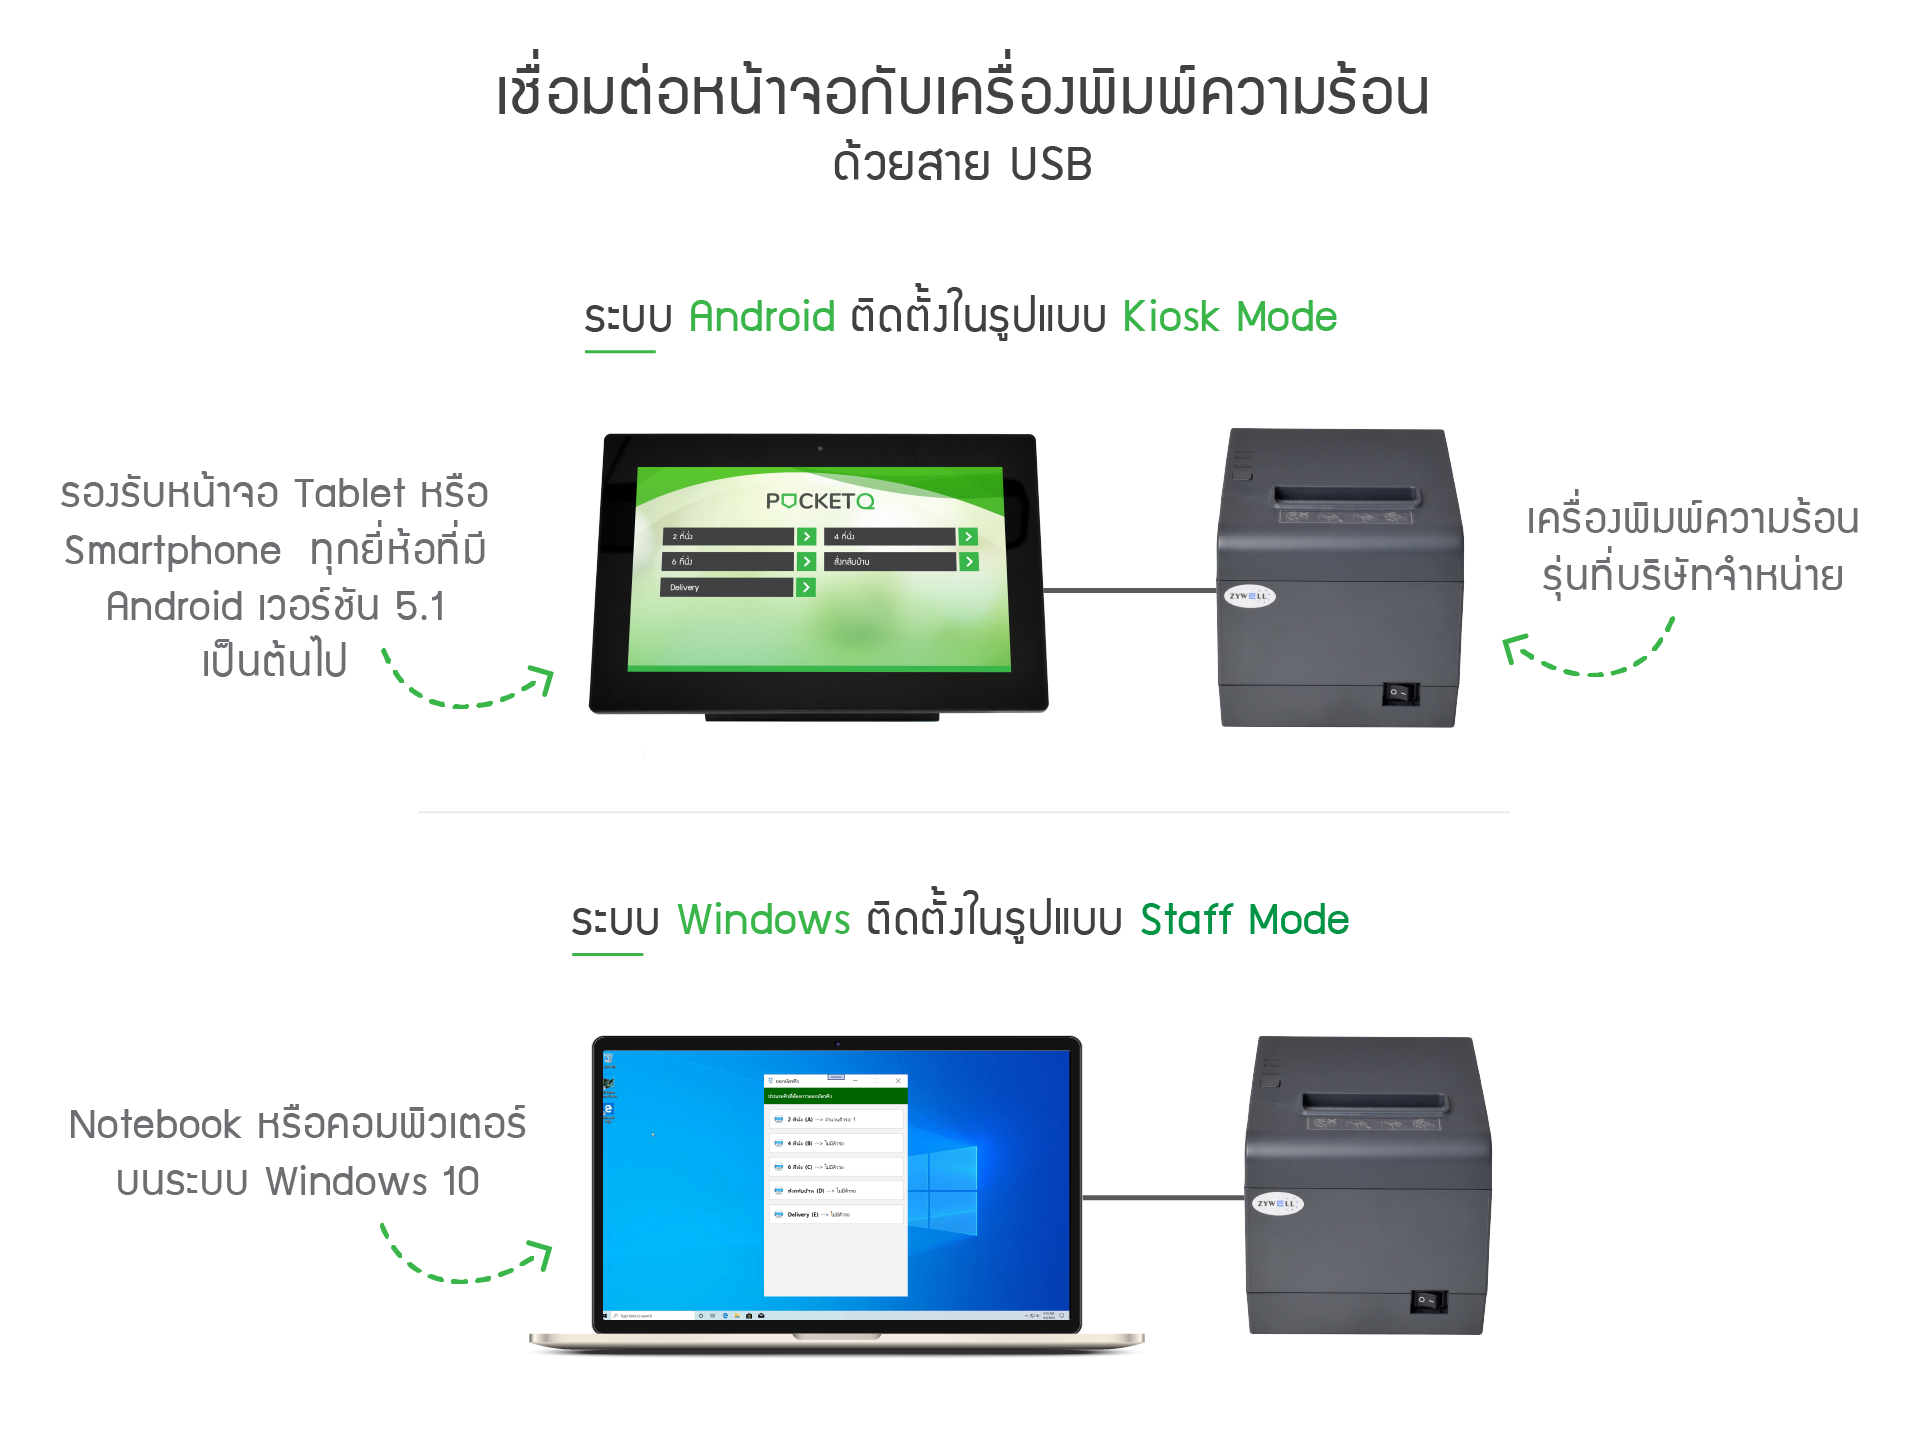 เชื่อมต่อหน้าจอออกบัตรคิวกับเครื่องพิมพ์ความร้อนด้วยสาย USB รองรับทั้งแบบ Kiosk mode และแบบ Staff mode